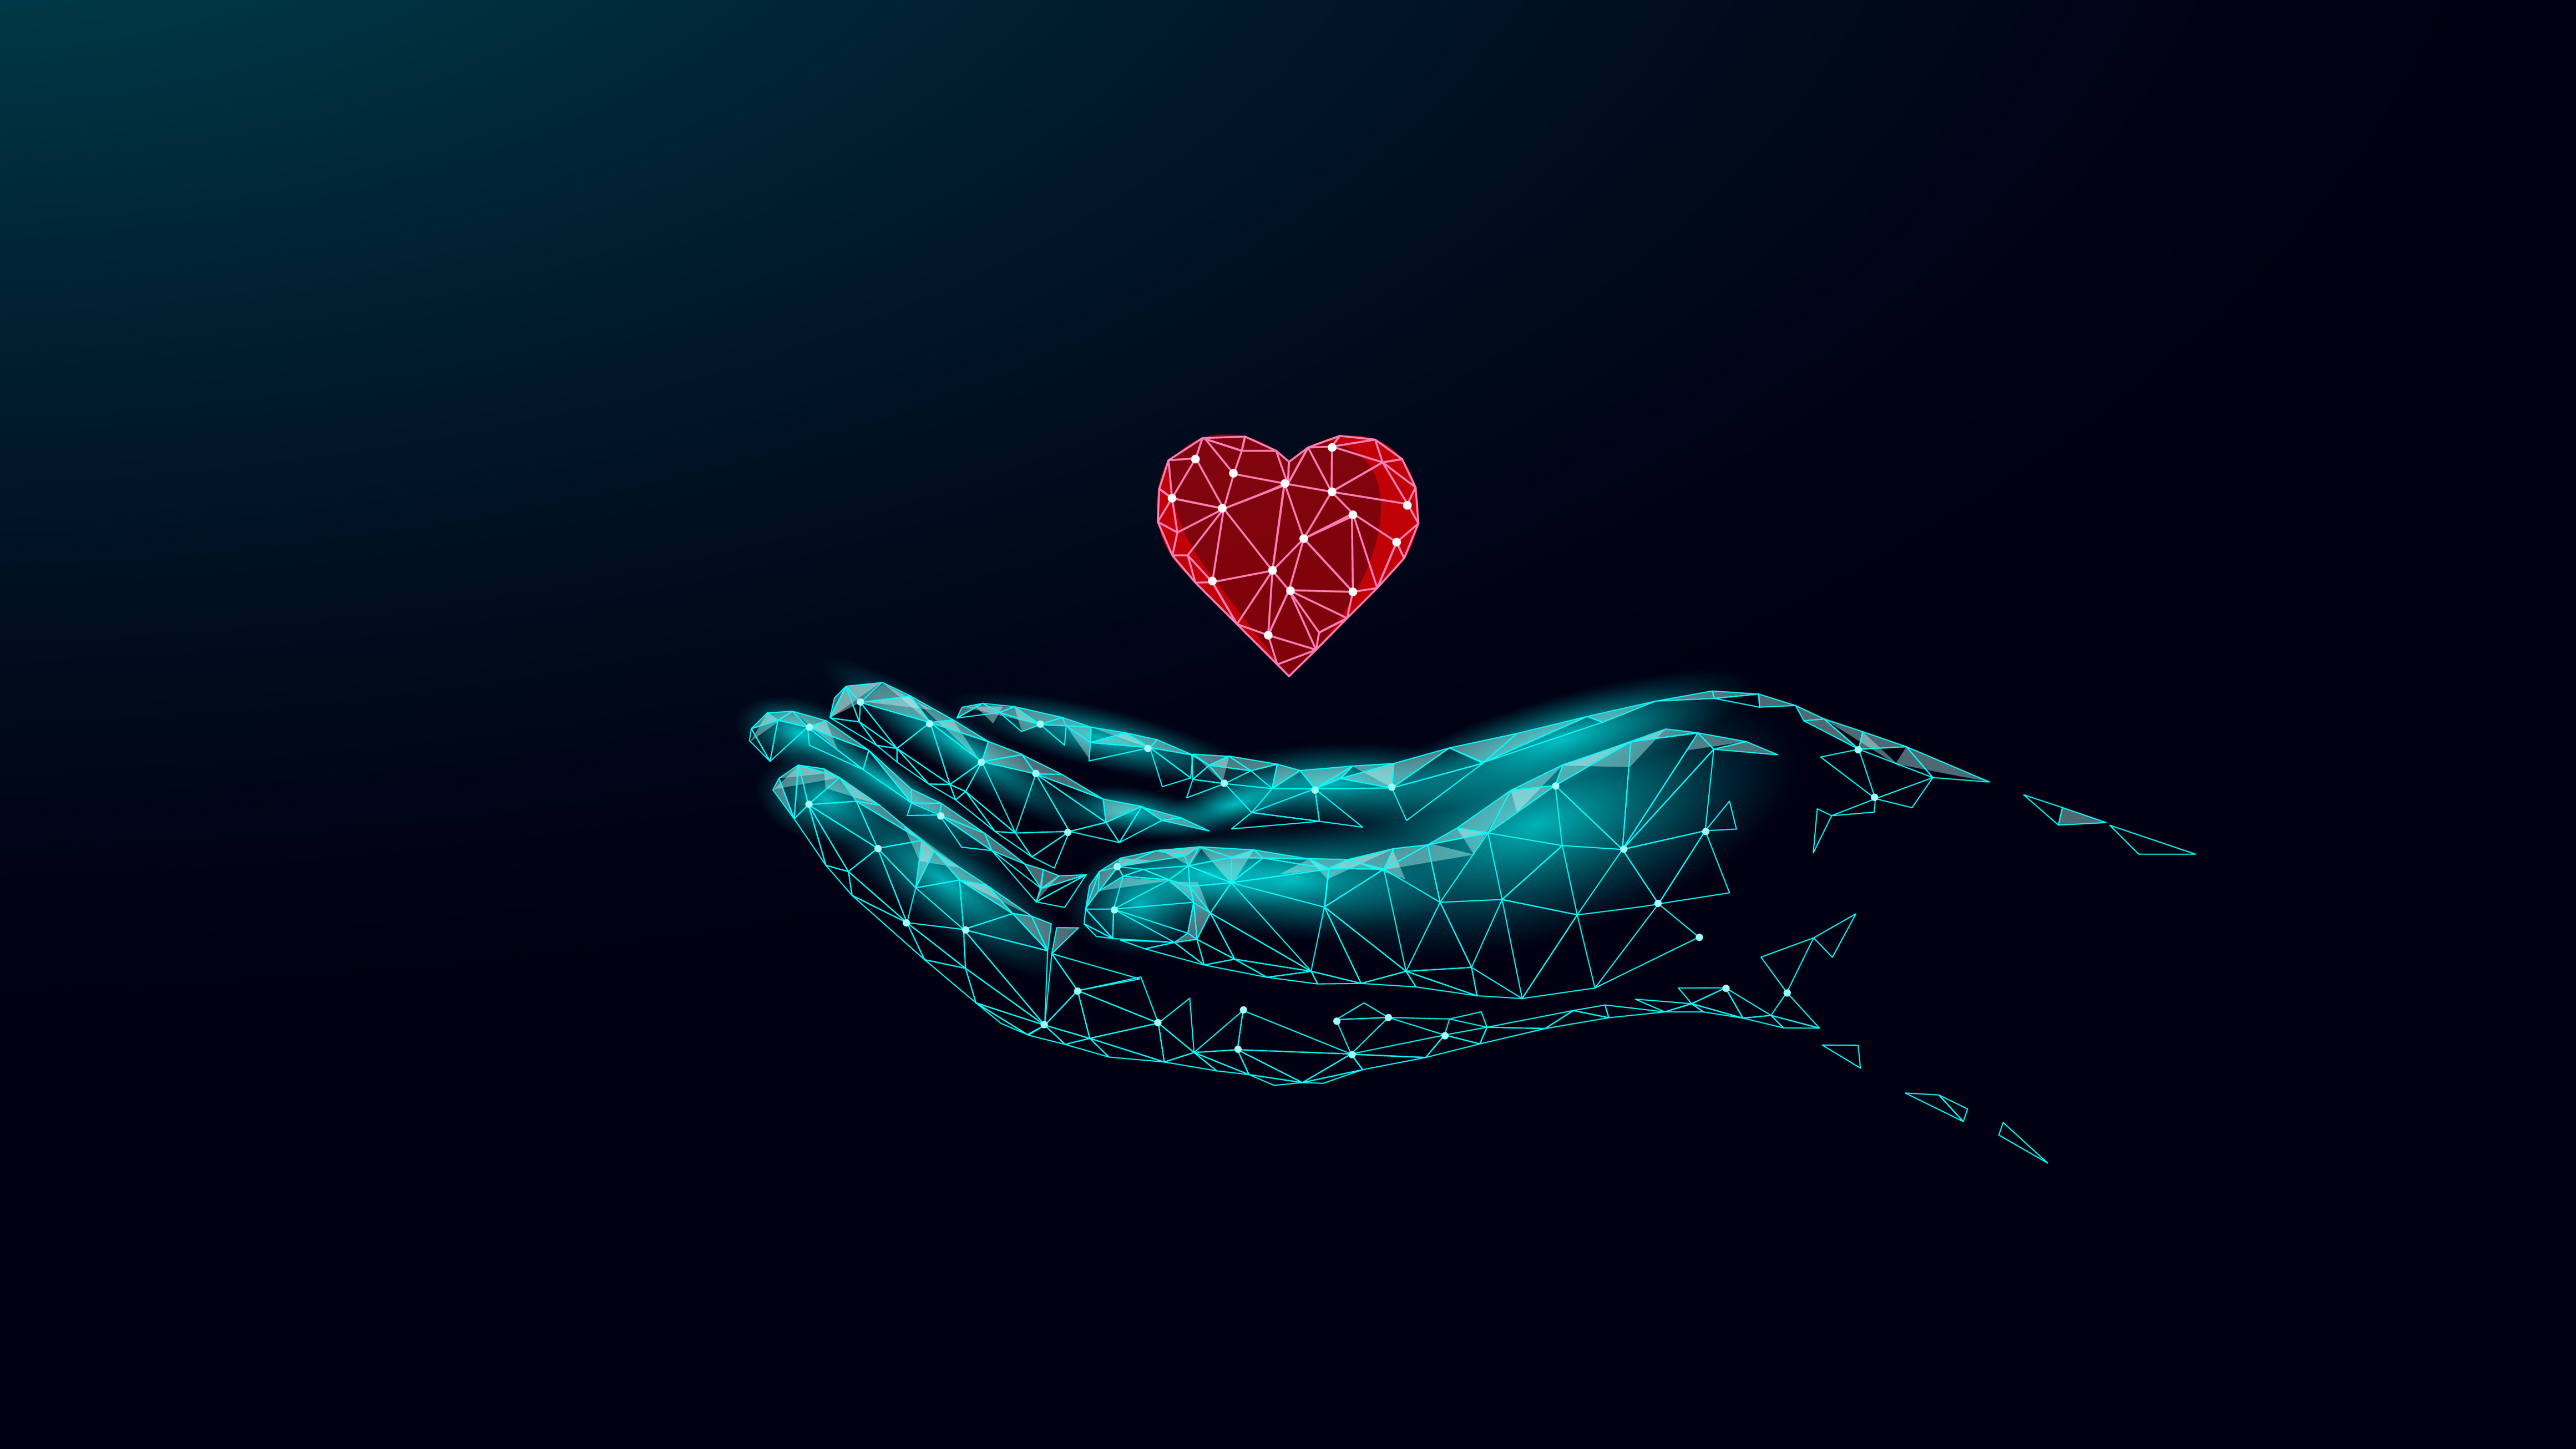 Fundraising Digital - virtuelle Hand aus Lichteffekten mit schwebendem virteuellen Herz